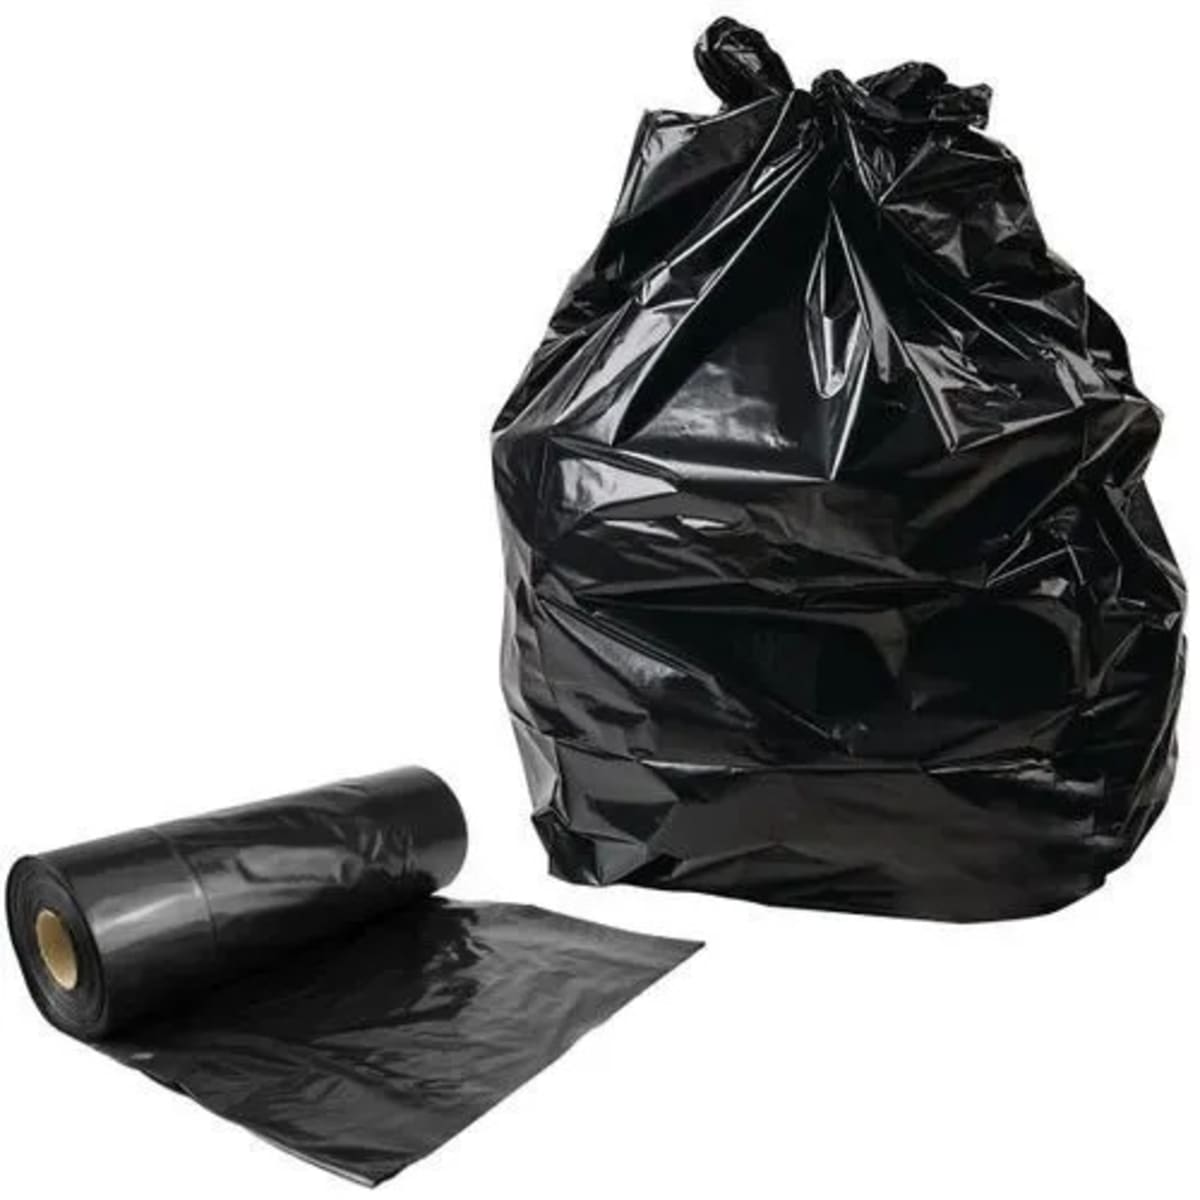 Heavy Duty Trash/ Refuse Waste Bin Nylon Bag - 1 Roll